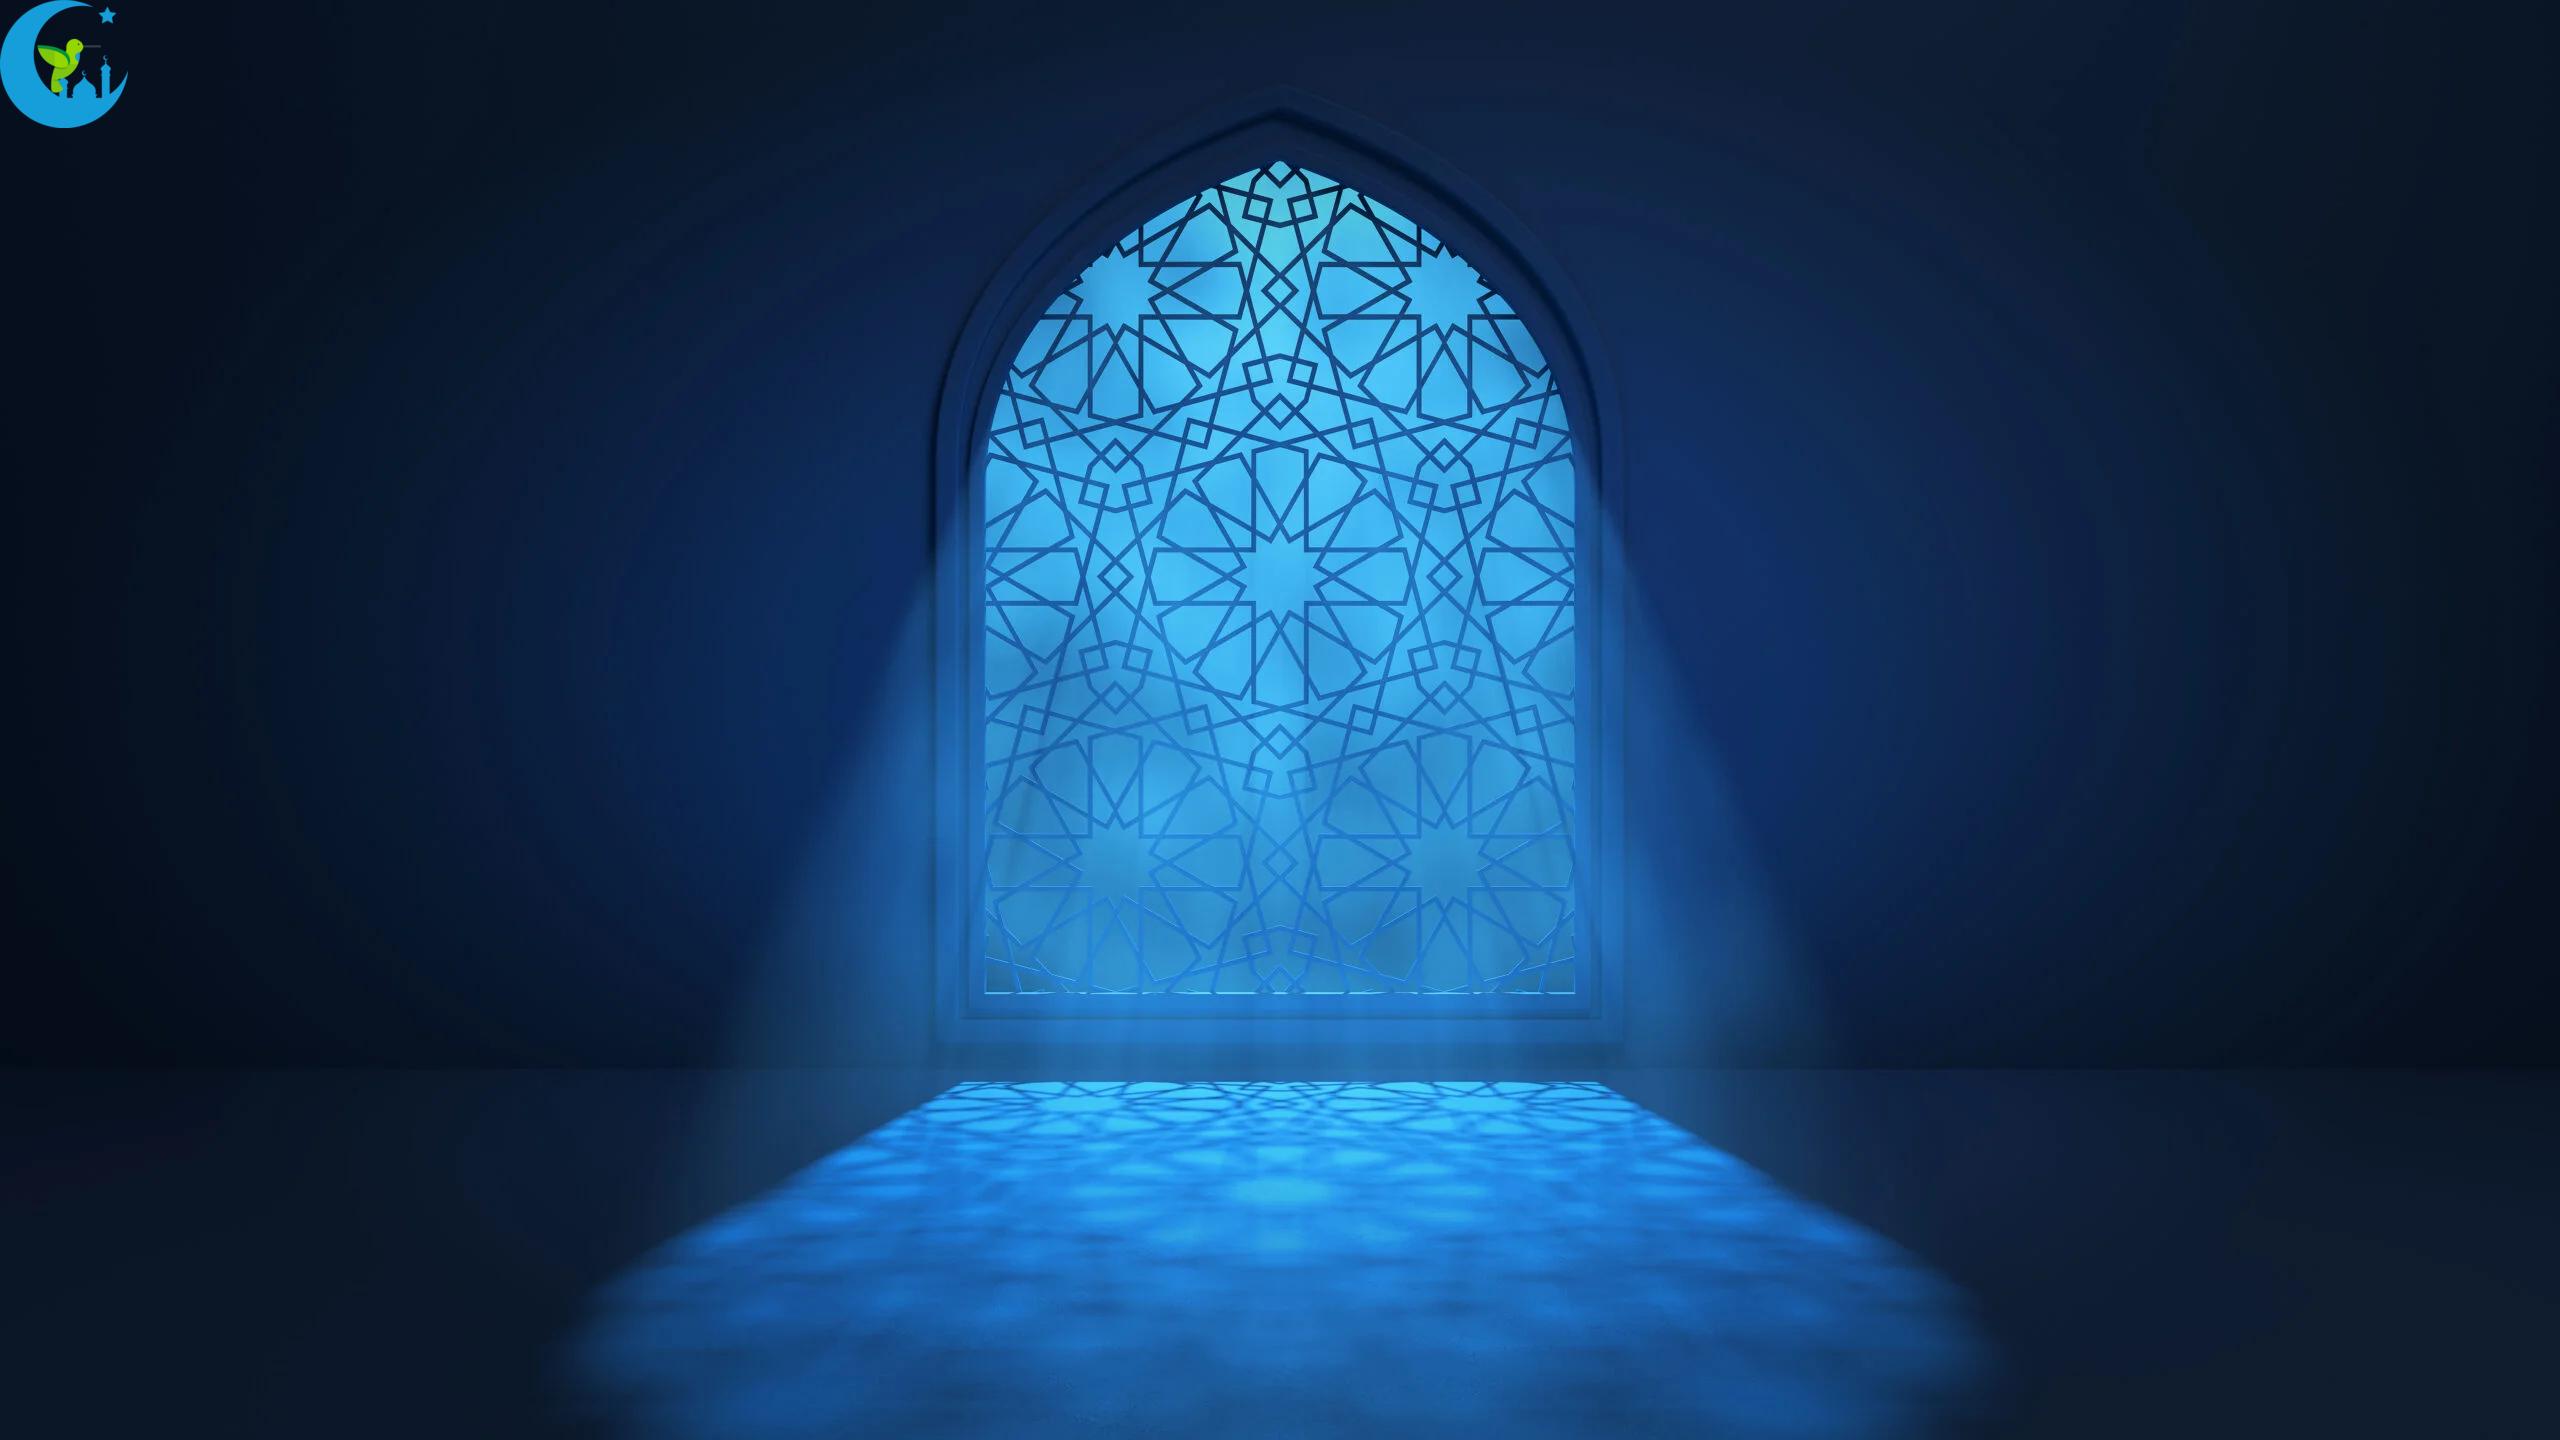 أهمية الصلاة في الإسلام: ركيزة العبادة والتواصل مع الله